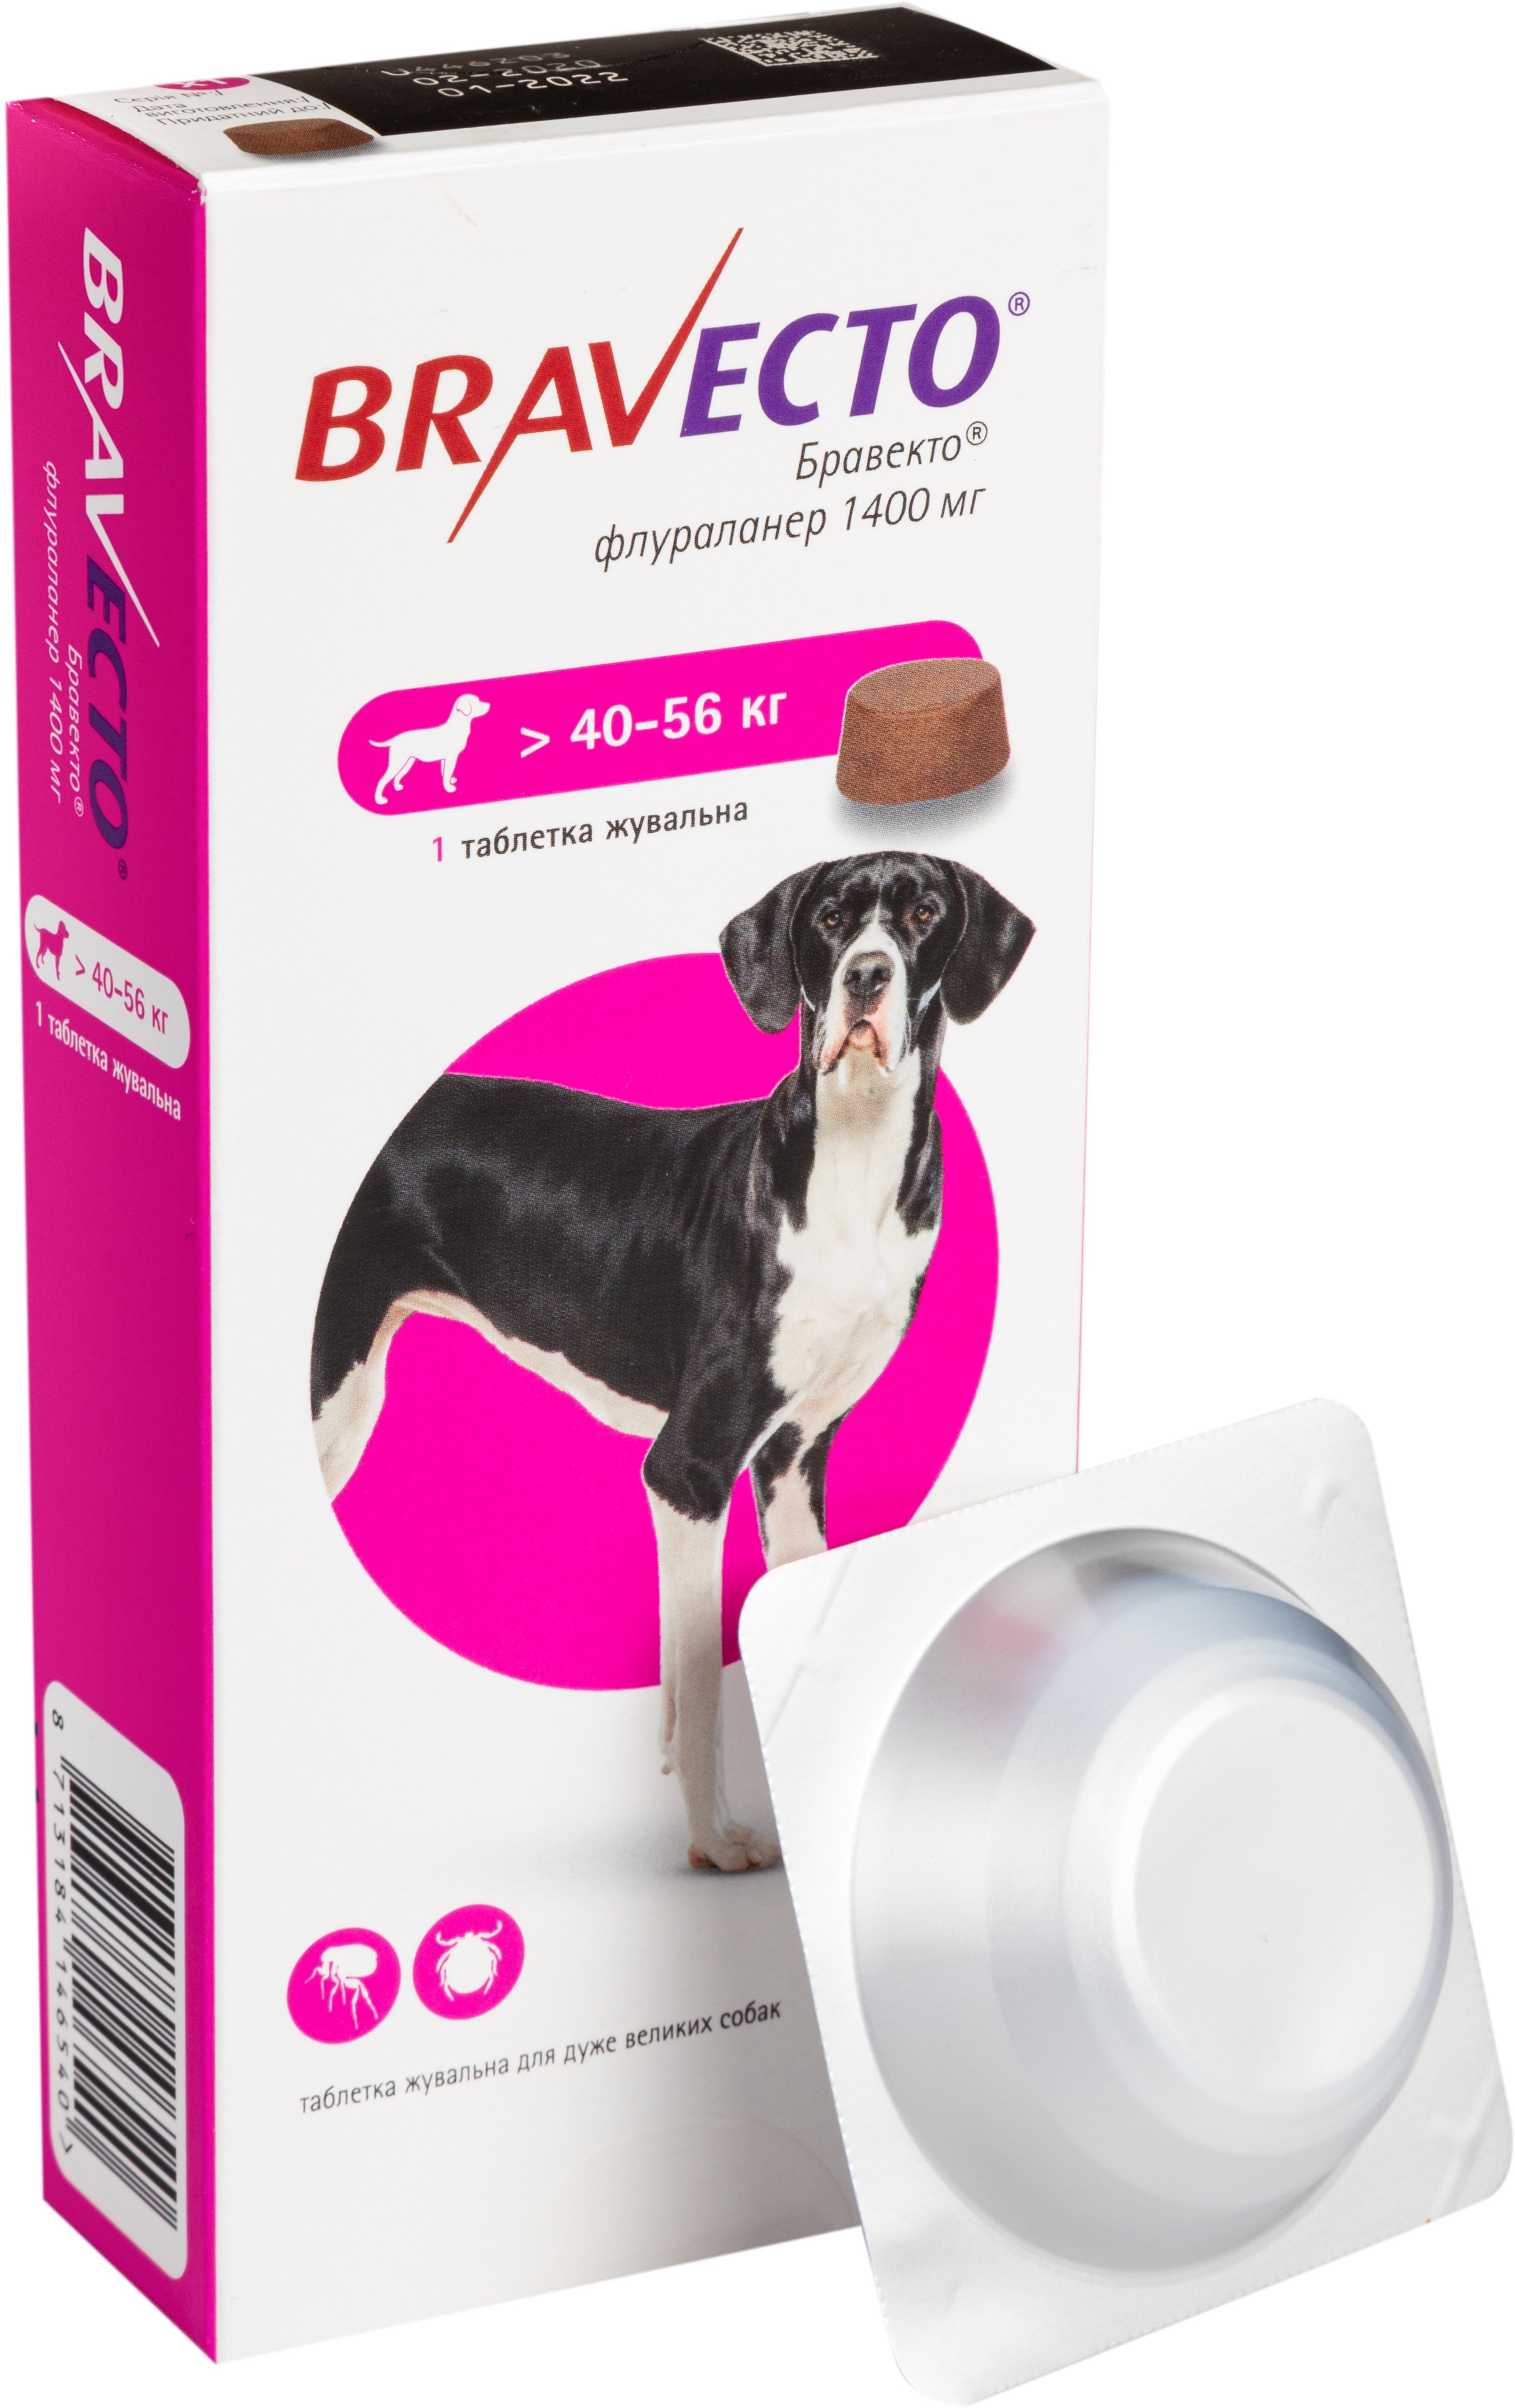 Жевательная таблетка Bravecto от блох и клещей для собак с весом 40-56 кг - фото 1